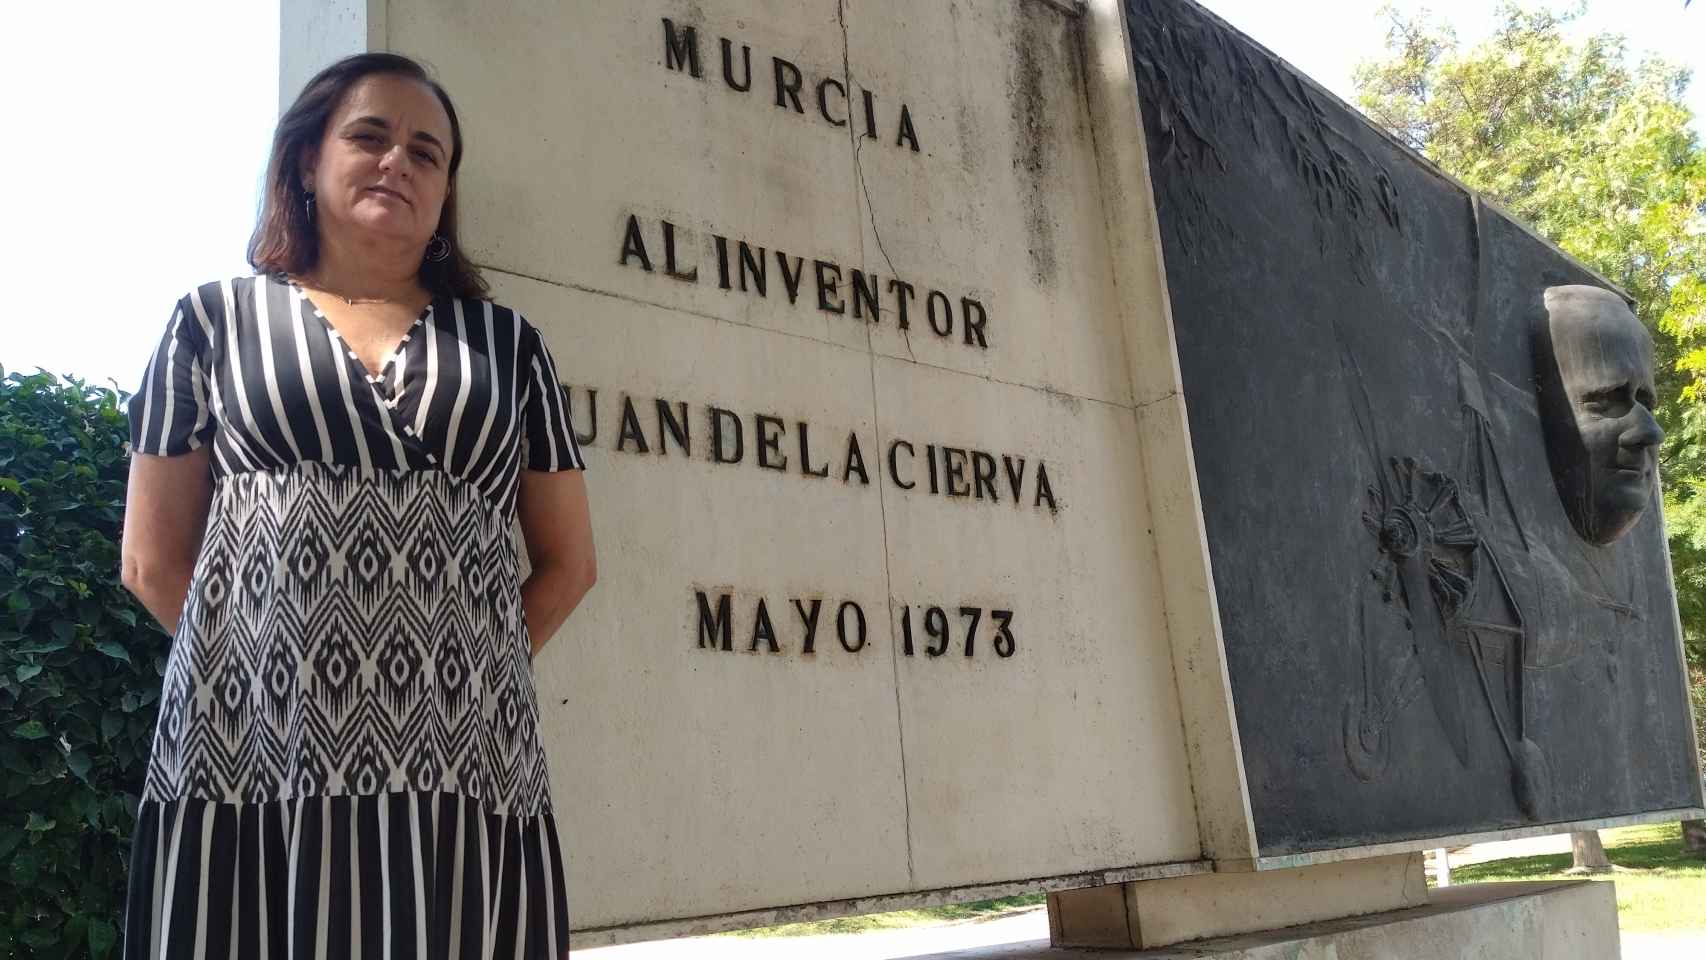 Ana de la Cierva, nieta del inventor del autogiro, en el monumento dedicado a Juan de la Cierva en la céntrica Ronda de Garay en Murcia.